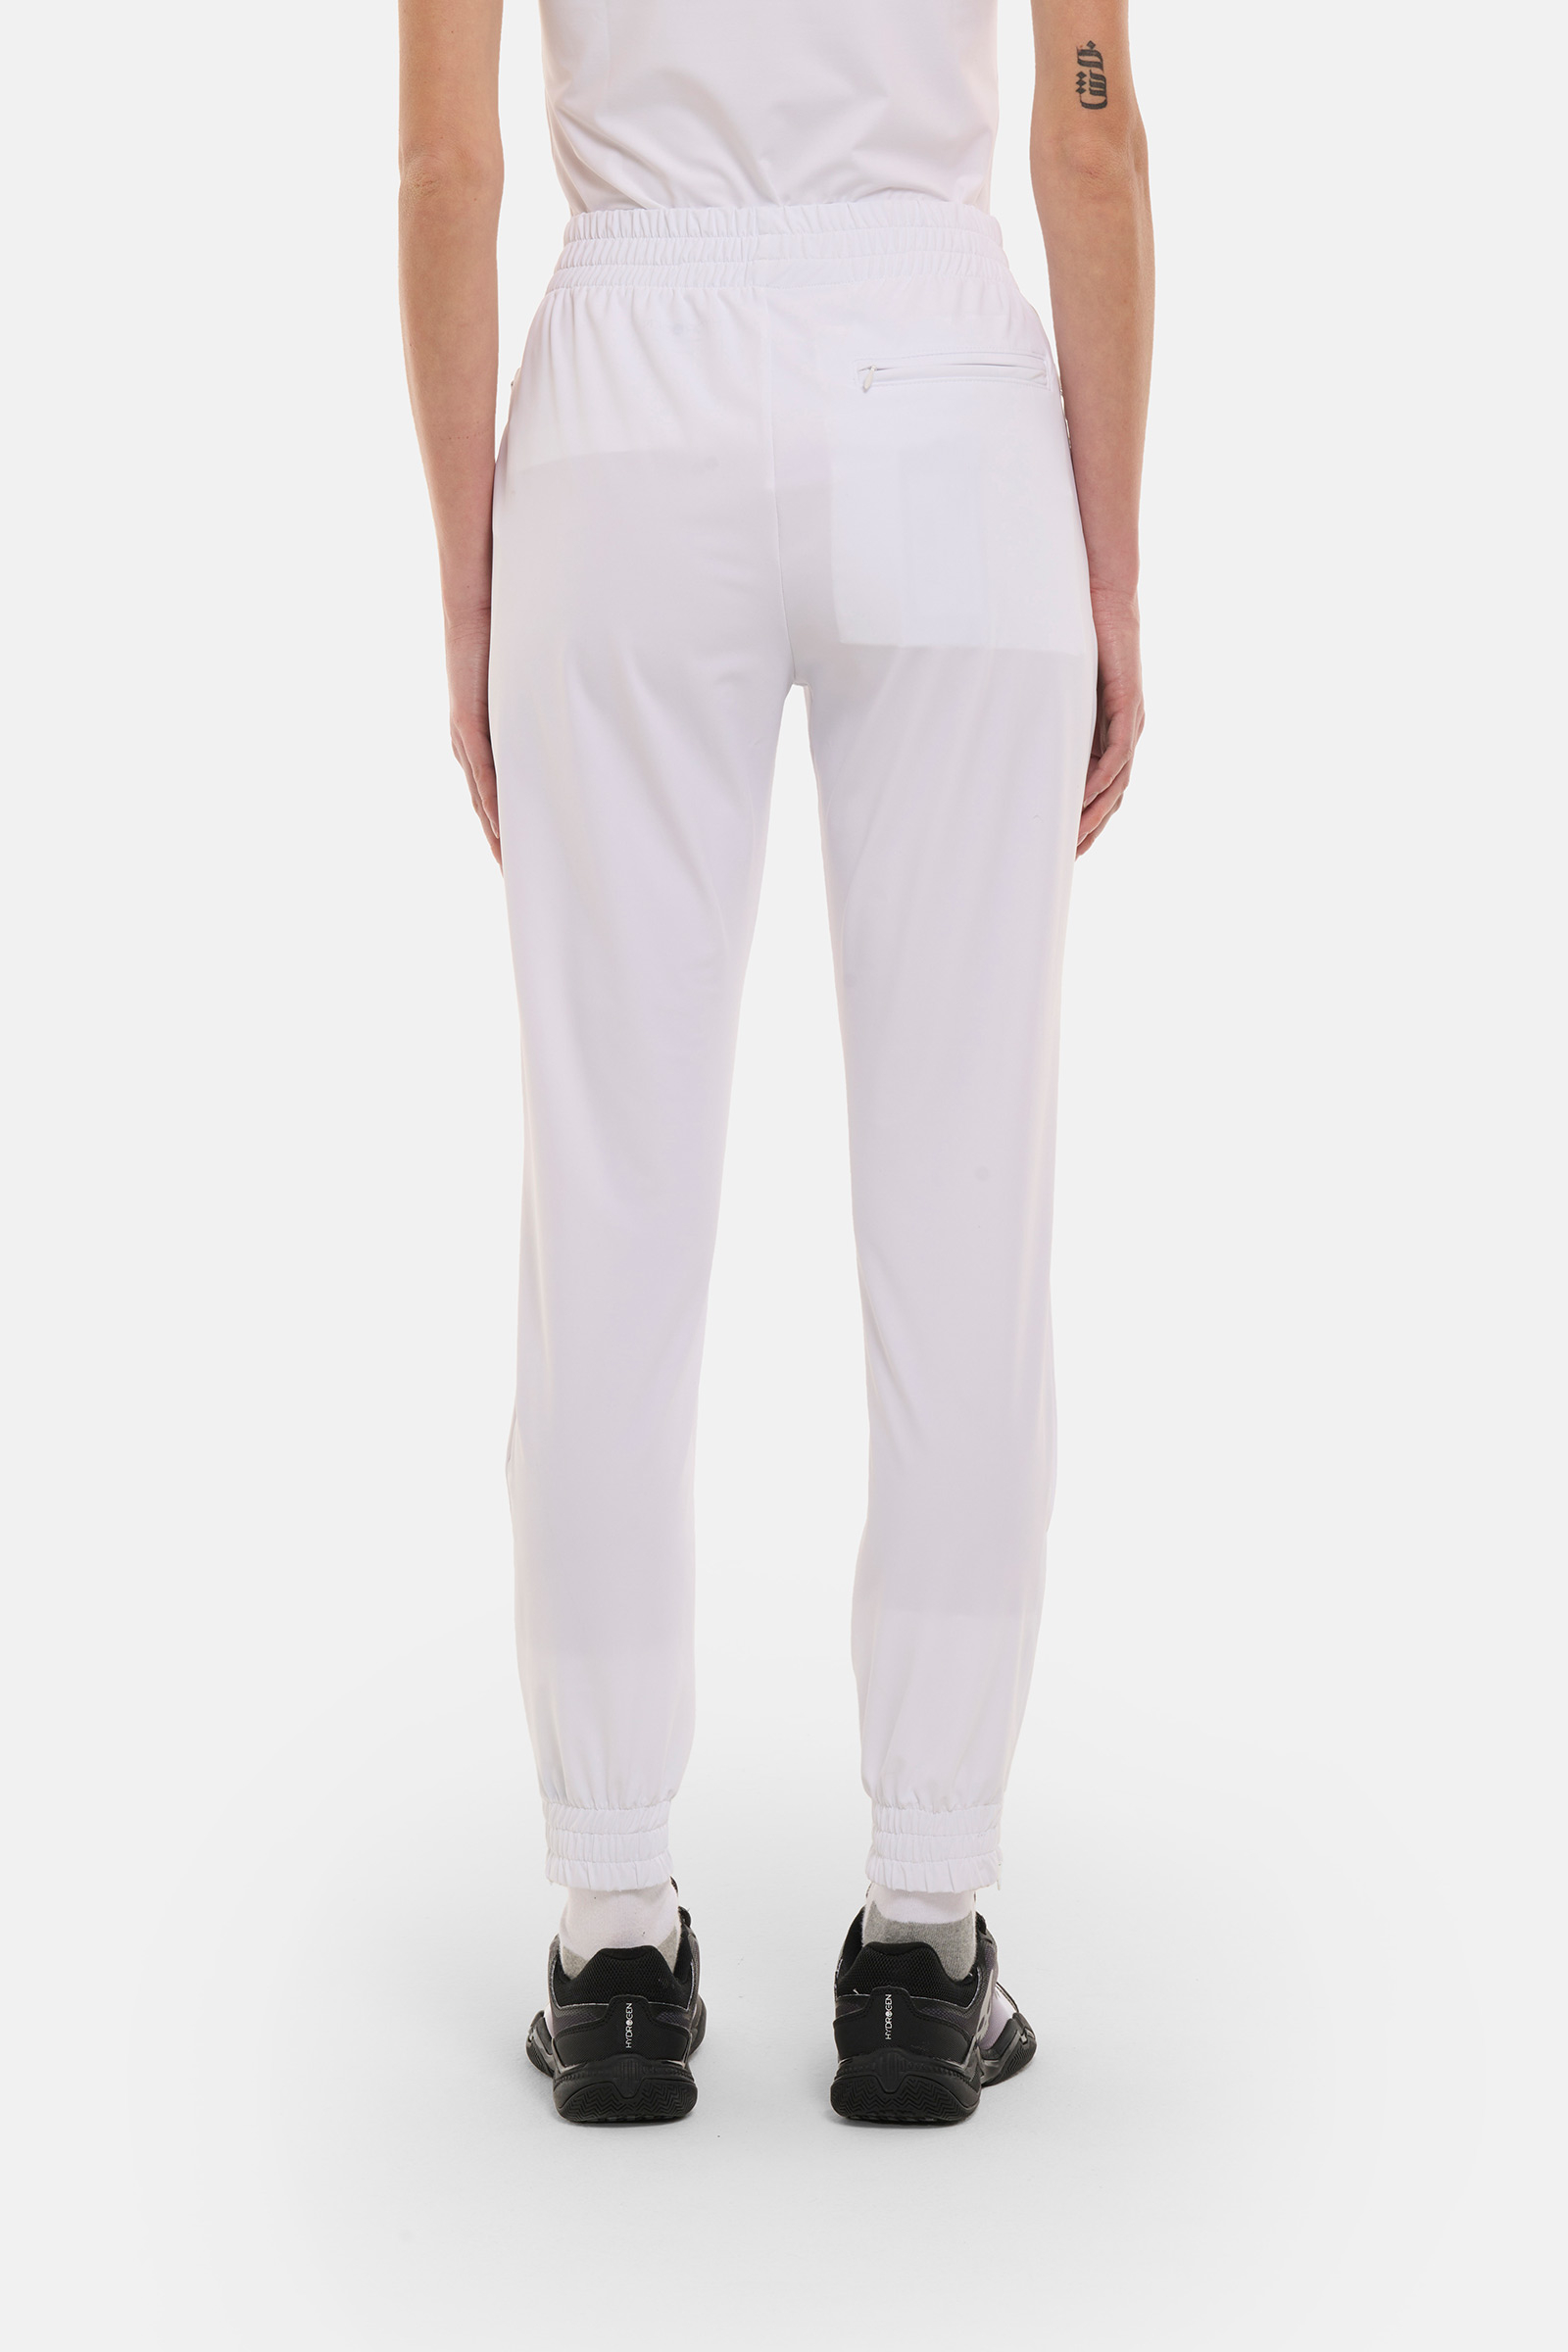 SPORT STRIPES TECH PANTS - WHITE - Hydrogen - Luxury Sportwear